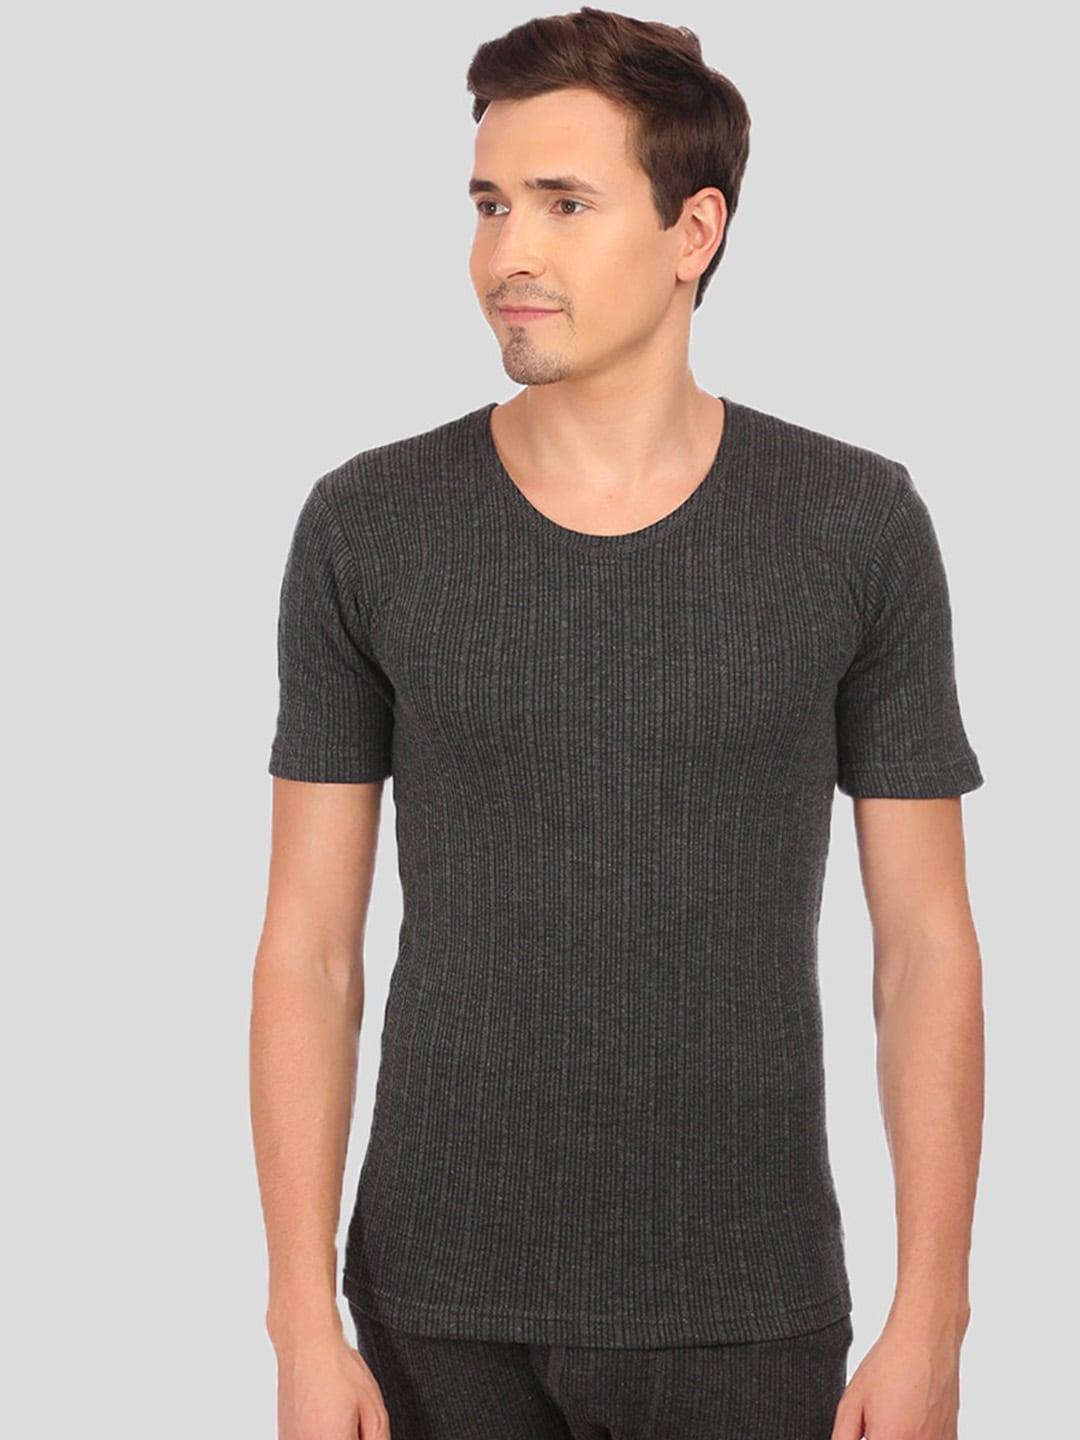 NEVA Men Black Striped Thermal T-Shirt